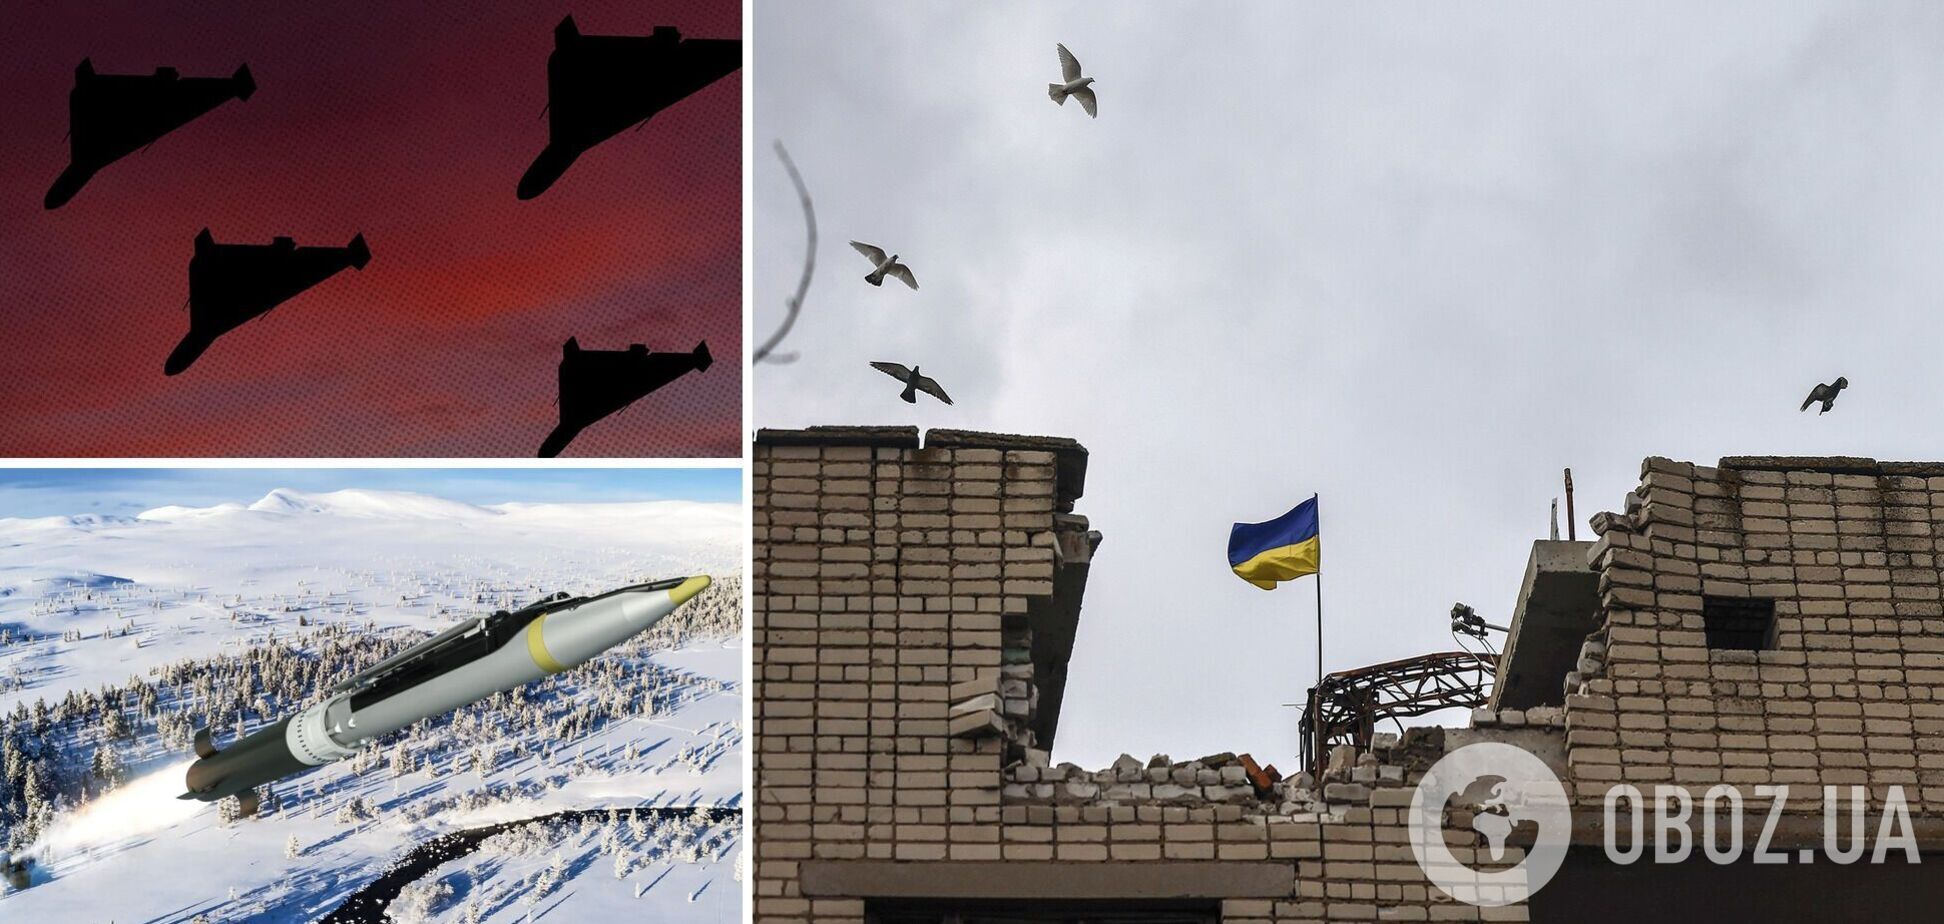 'Не игнорируйте тревогу': в ВСУ предупредили украинцев об угрозе массированного ракетного удара